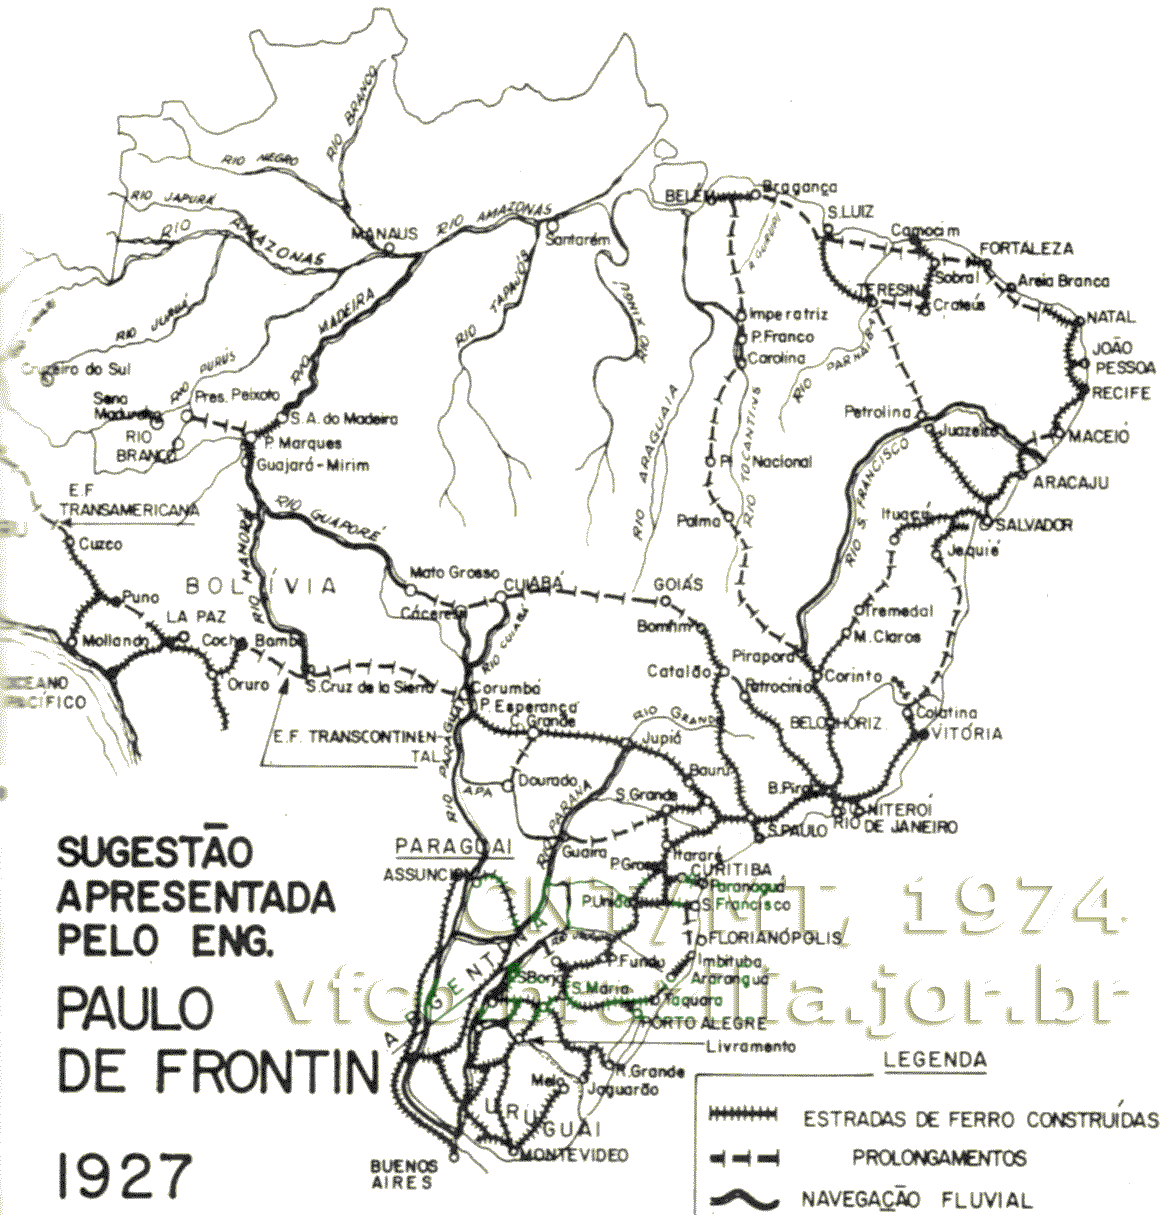 Mapa das ferrovias propostas por Paulo de Frontin em 1927